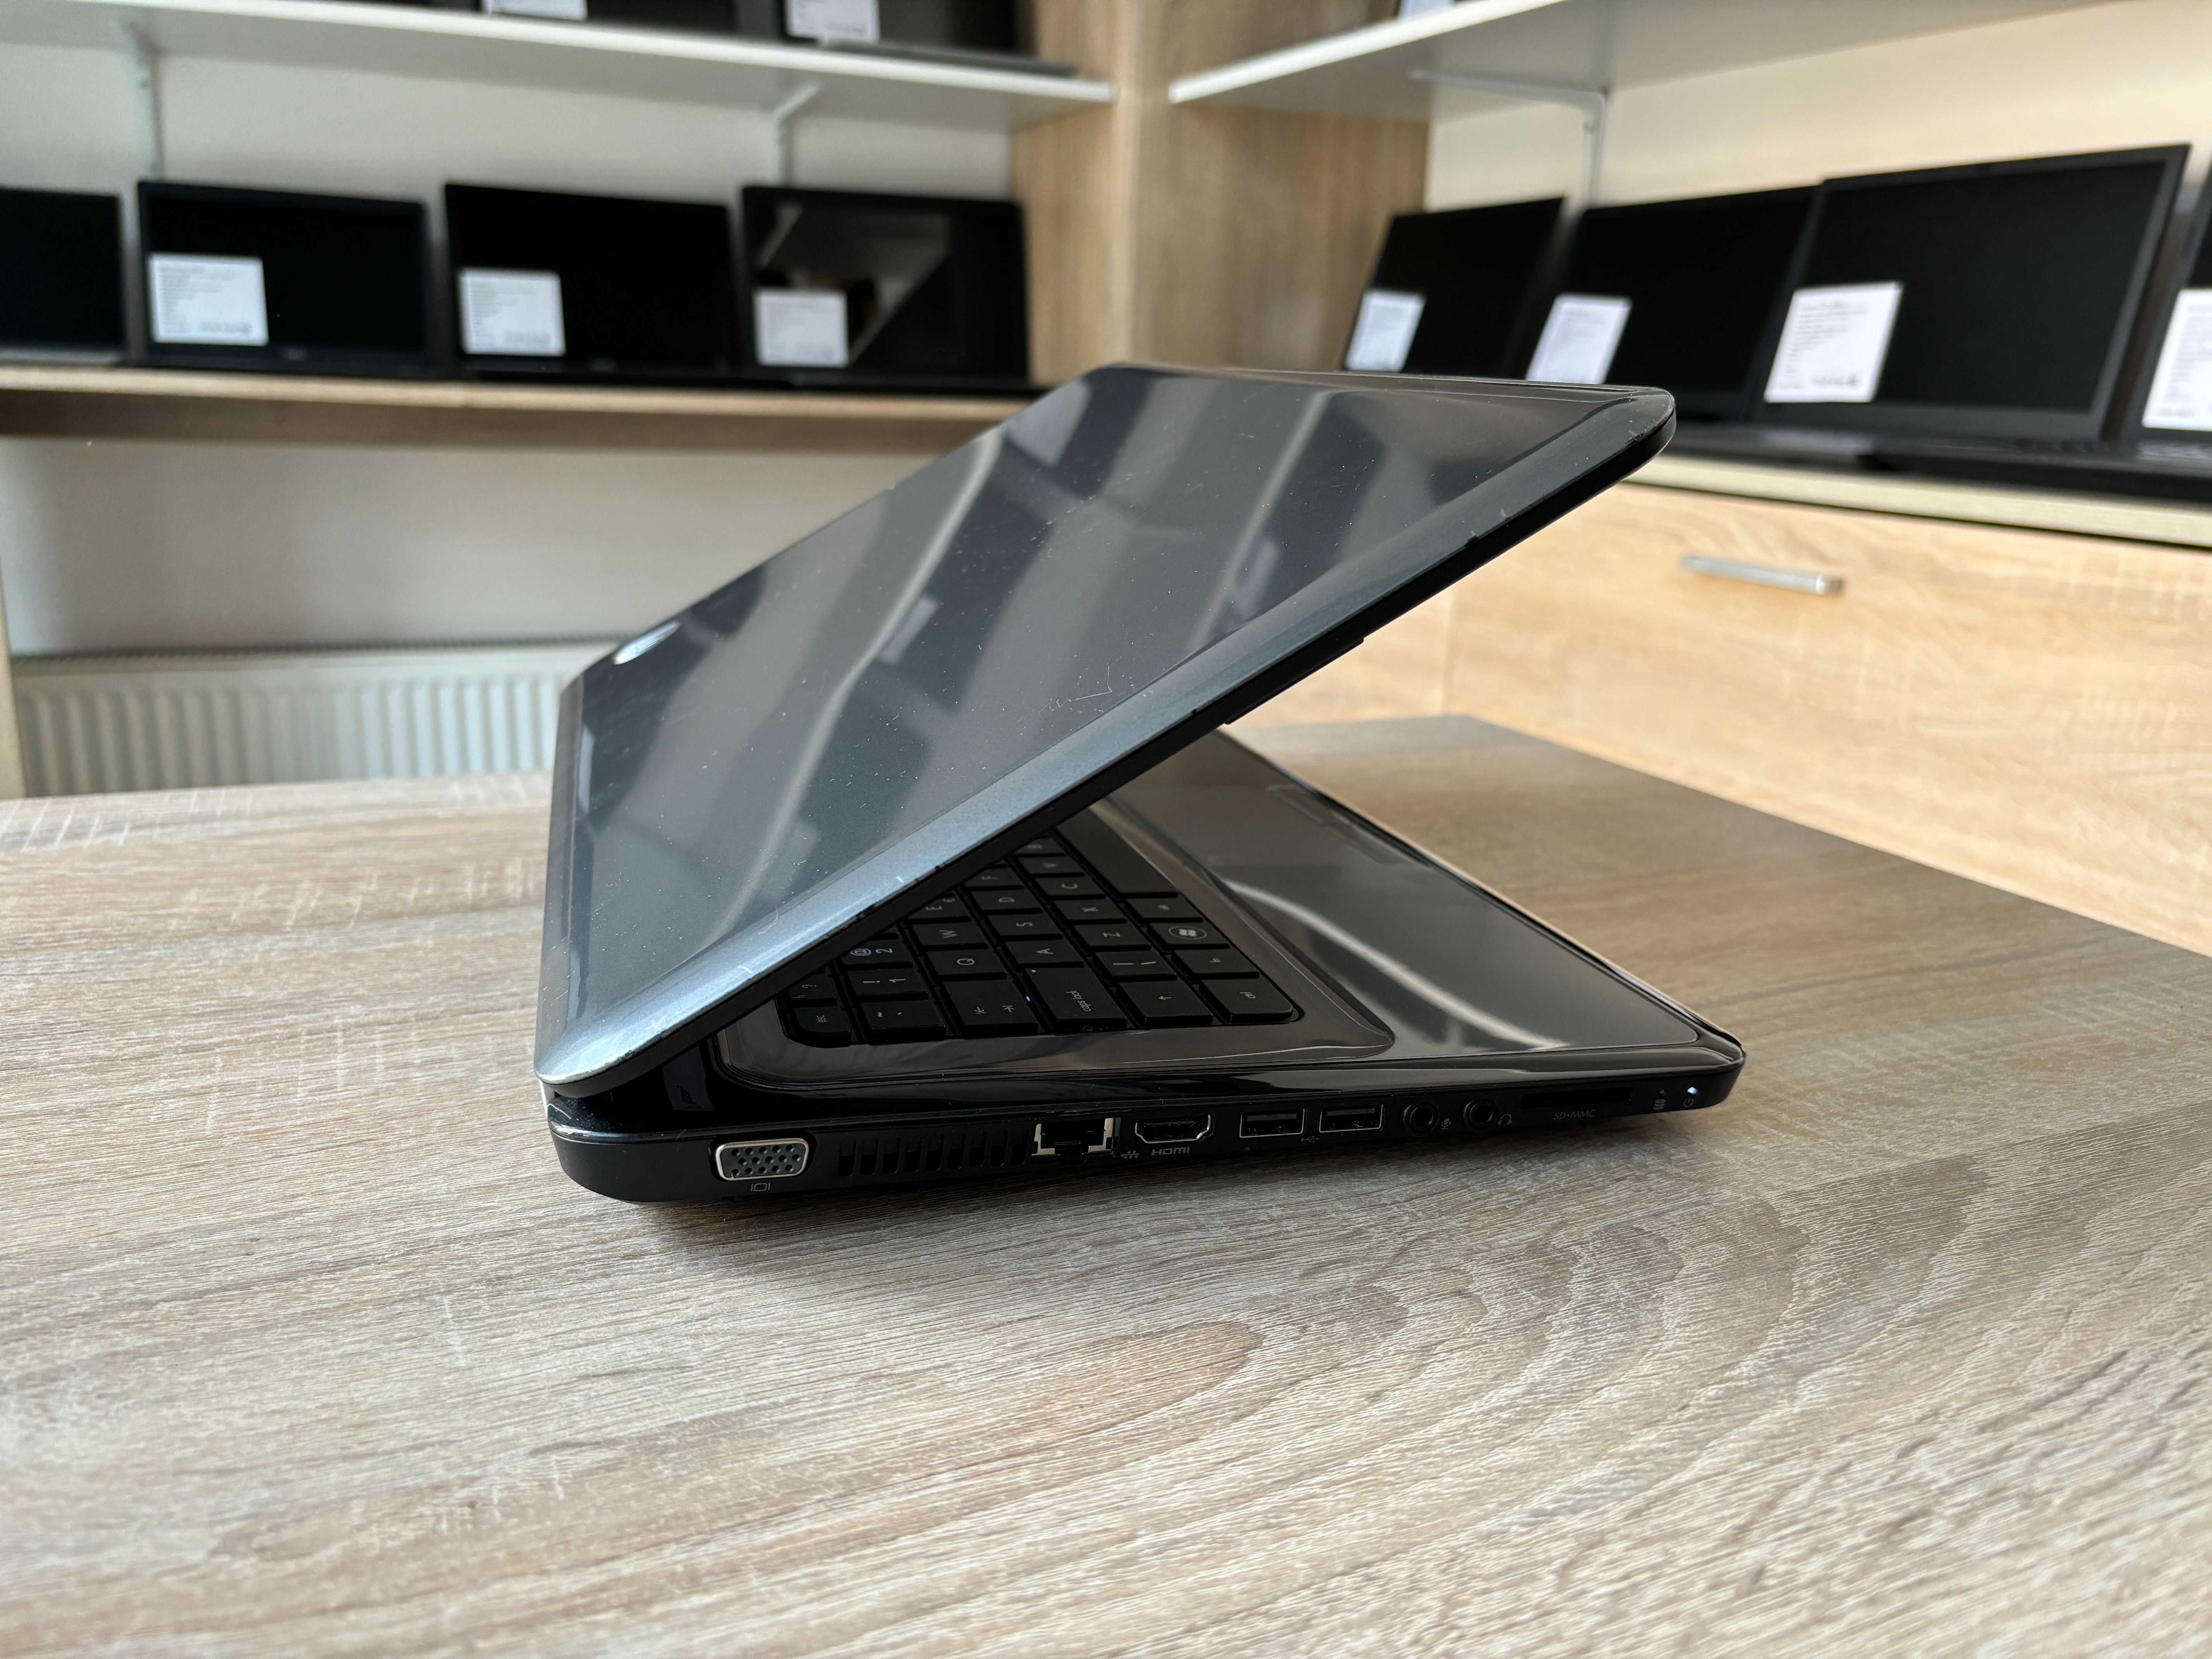 Laptop HP Pavilion G6 - i5-2430M, 8GB ram, dysk SSD, 100% sprawny